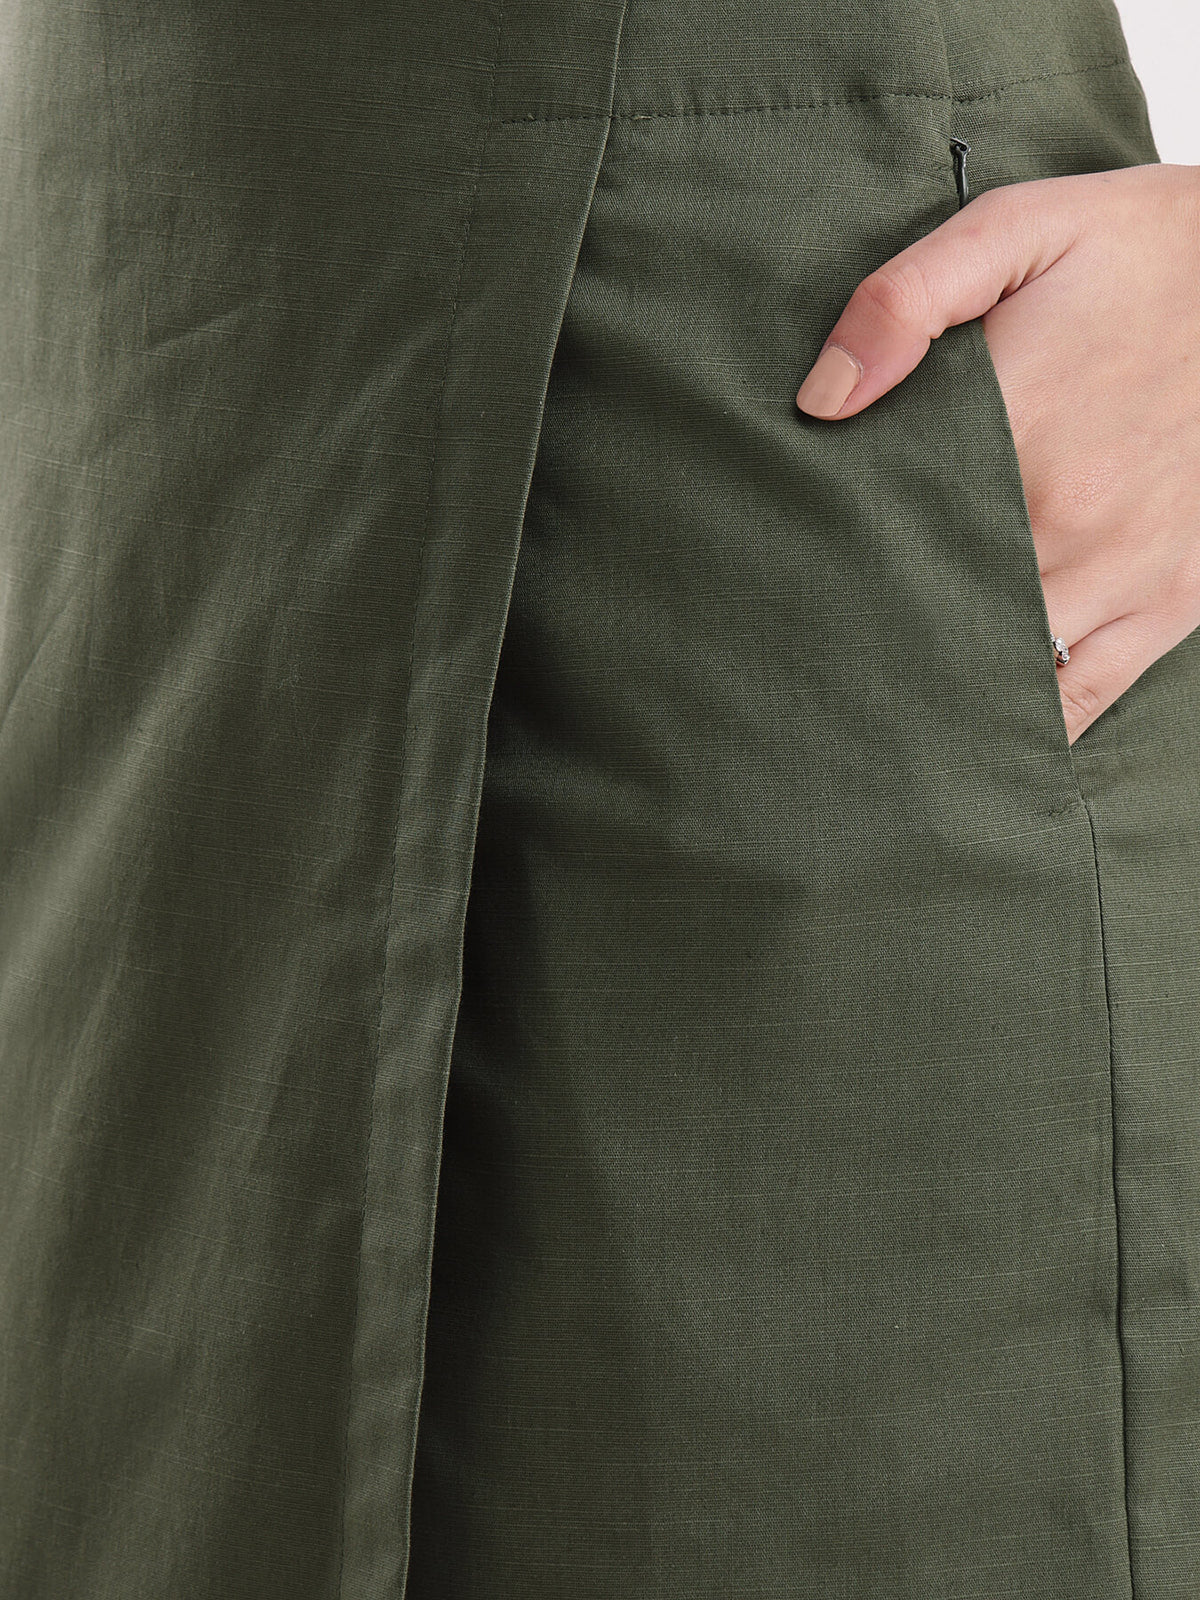 Linen Front Overlap Panel Skort - Olive